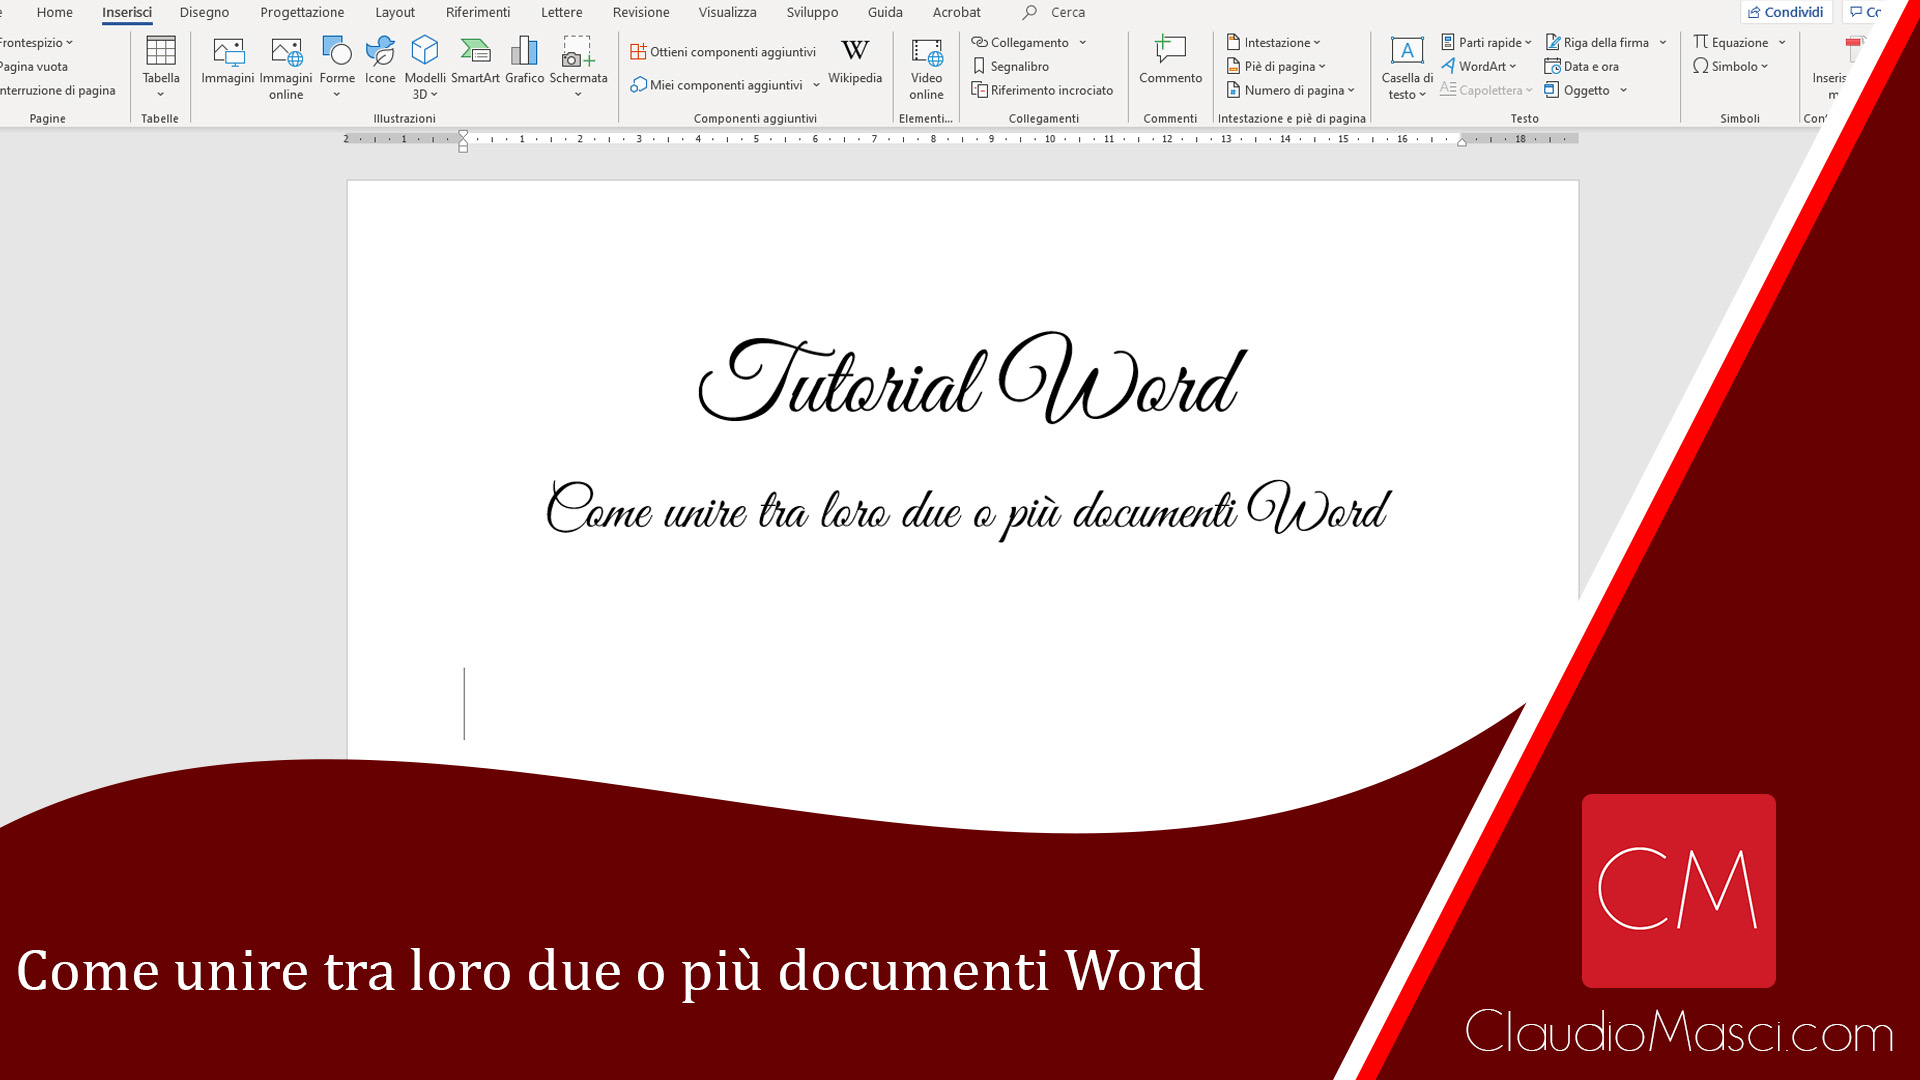 Come unire tra loro due o più documenti Word – Tutorial Microsoft Word